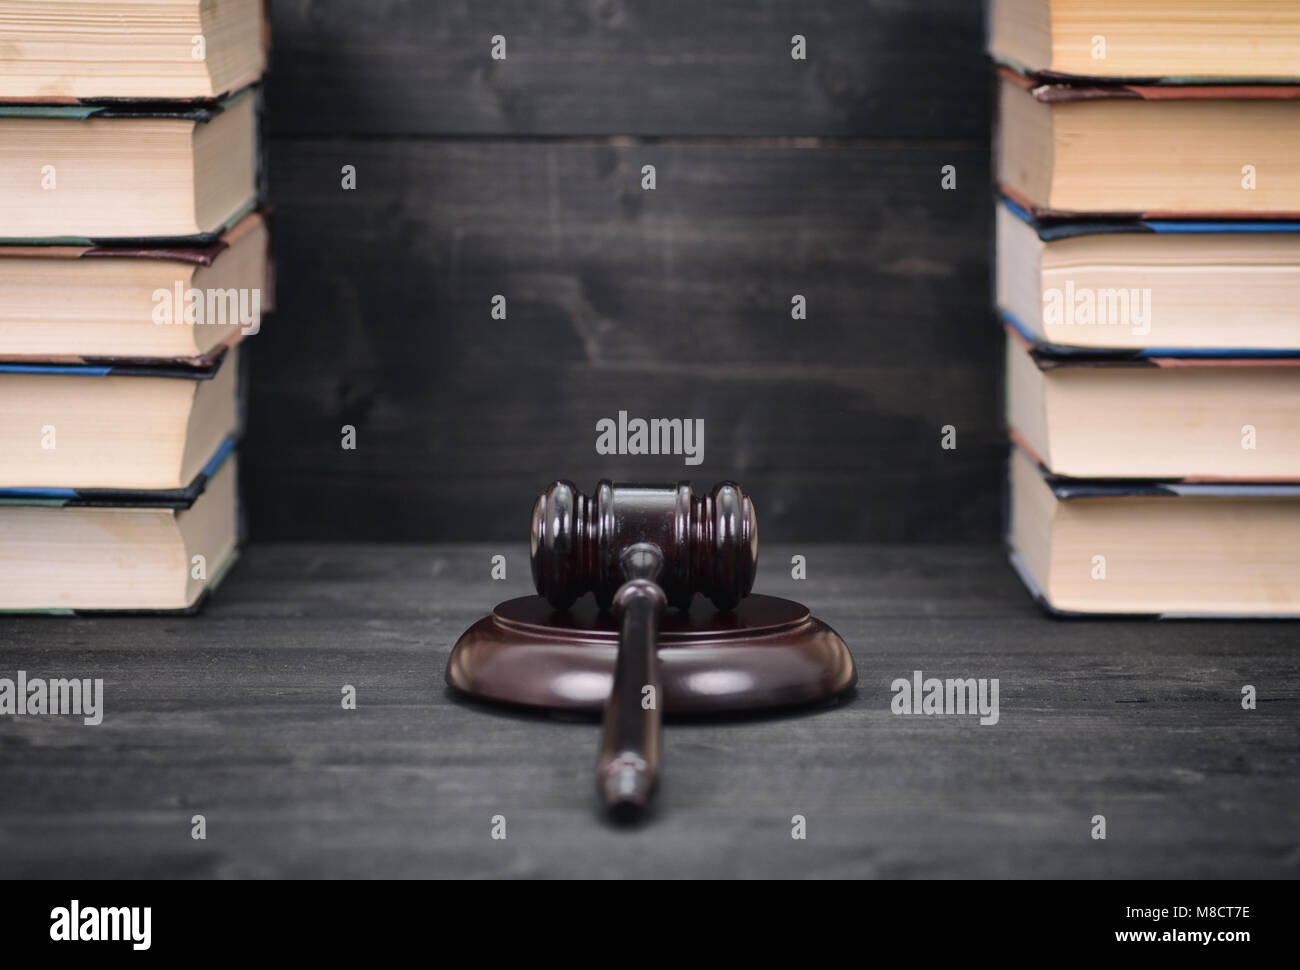 Recht und Gerechtigkeit, Rechtmäßigkeit Konzept, Richter Hammer und recht Bücher auf einem schwarzen Holz- Hintergrund, juristische Bibliothek Konzept. Stockfoto